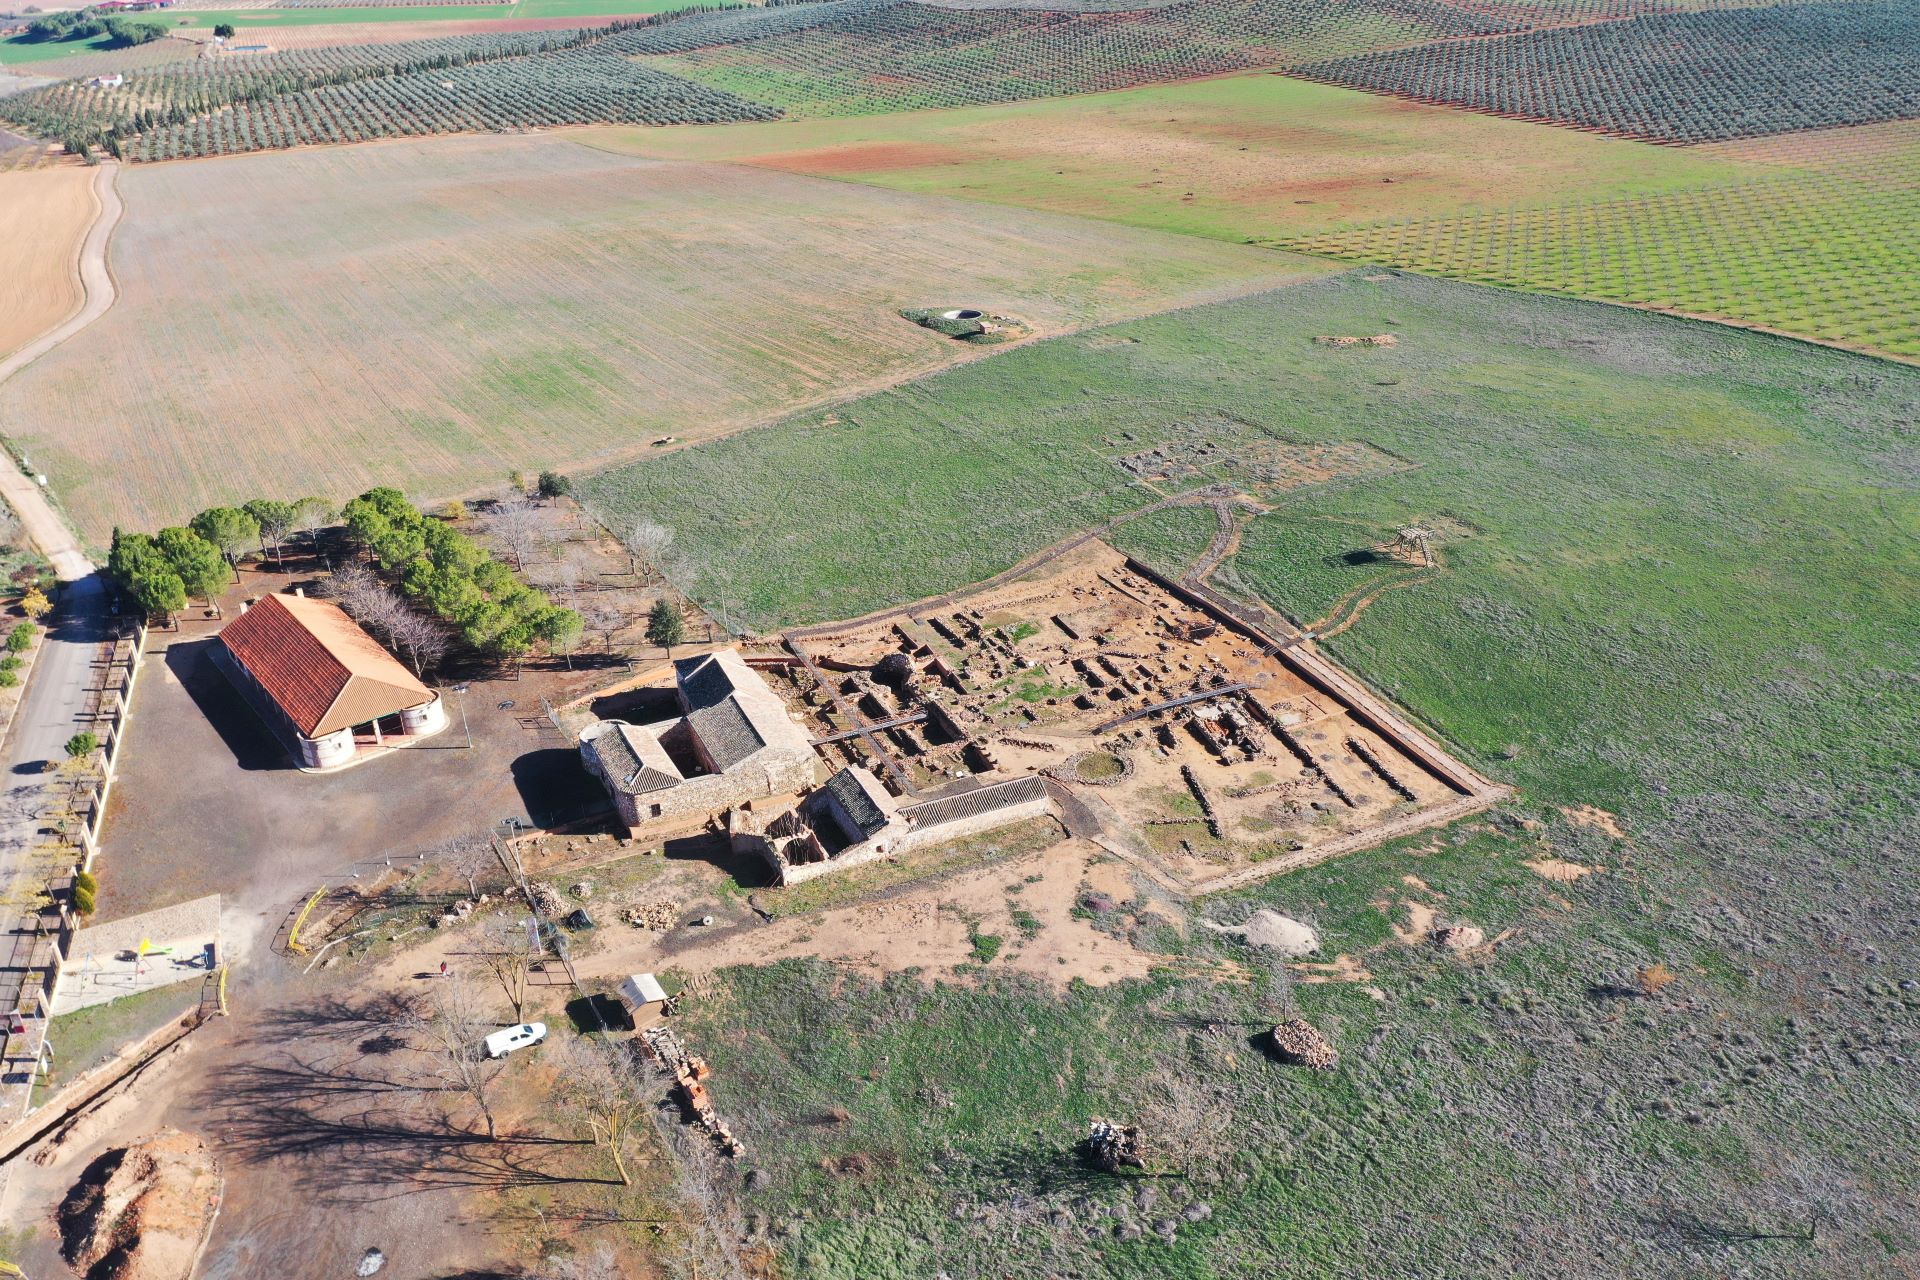 Vista general del área excavada caracterizada por la superposición de fases culturales.